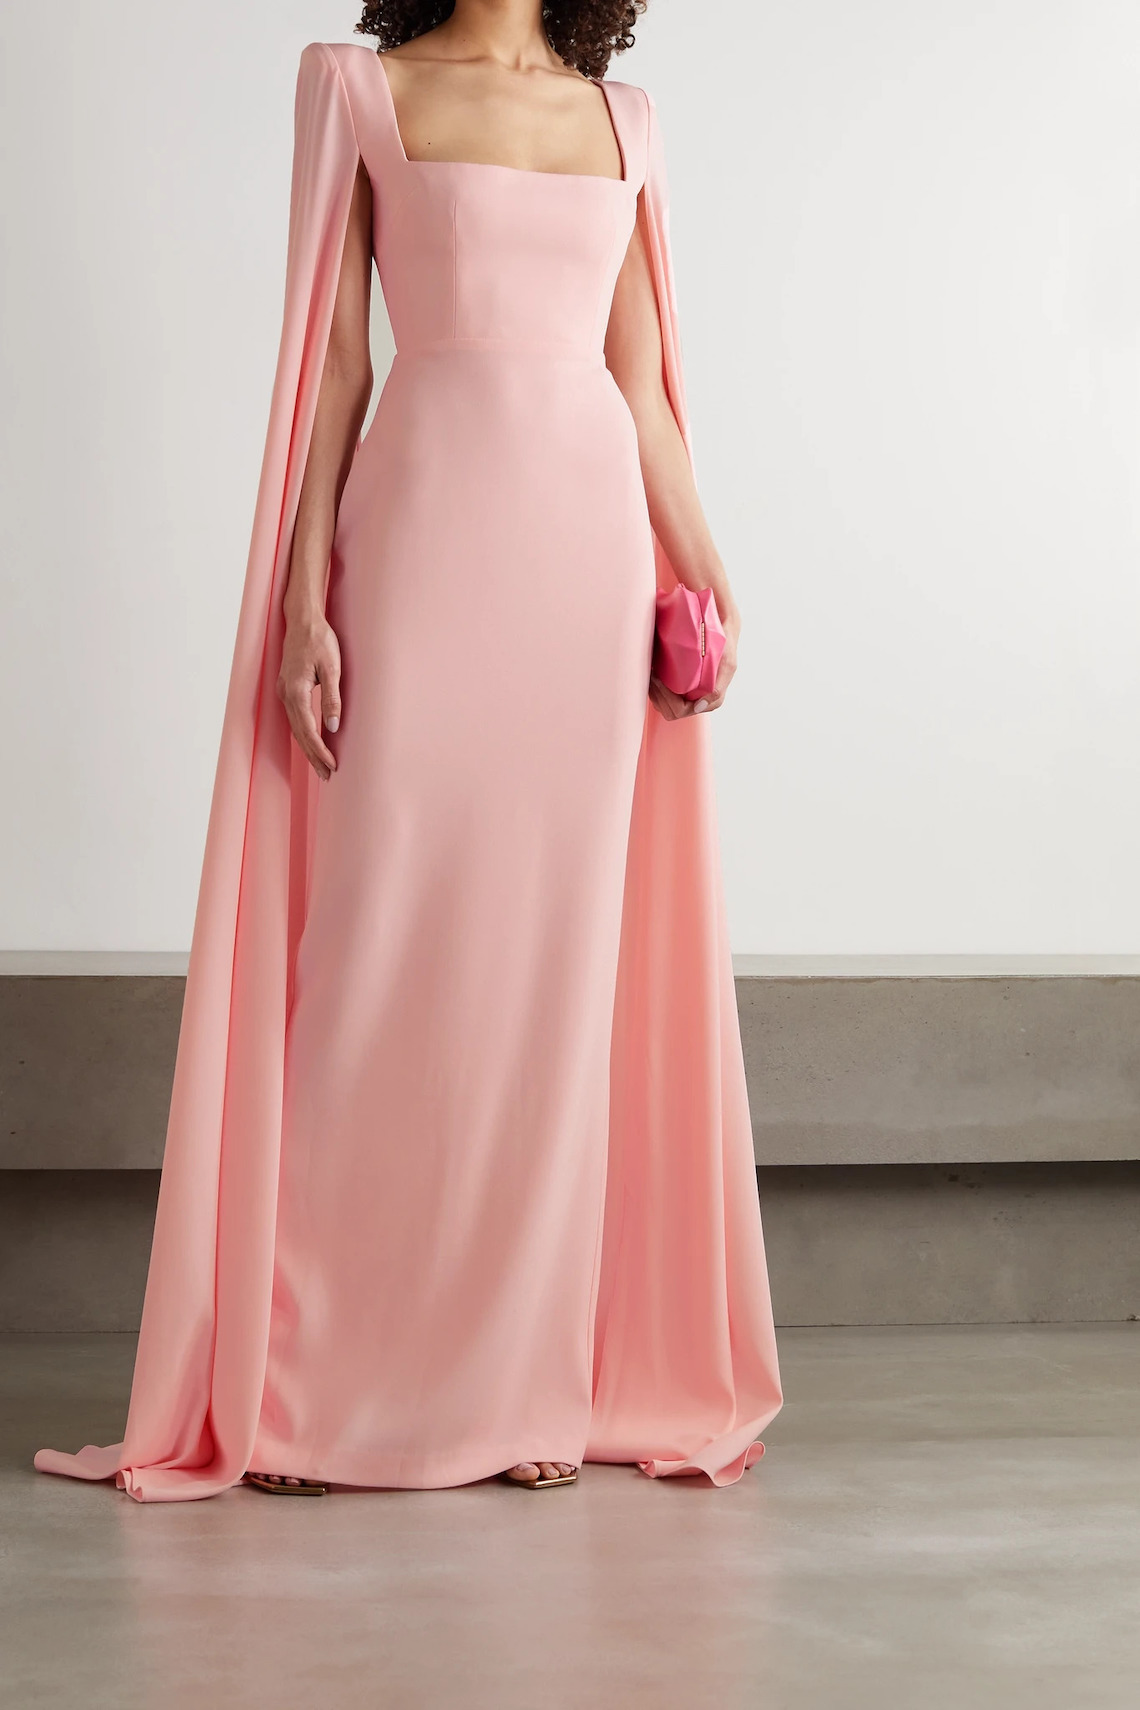 Alex Perry Pink Cape Wedding Dress Best Pink Wedding Dresses for 2021 2022 Brides Bridal Musings - 30 chiếc áo dài cưới màu hồng dành cho cô dâu yêu thích sắc màu